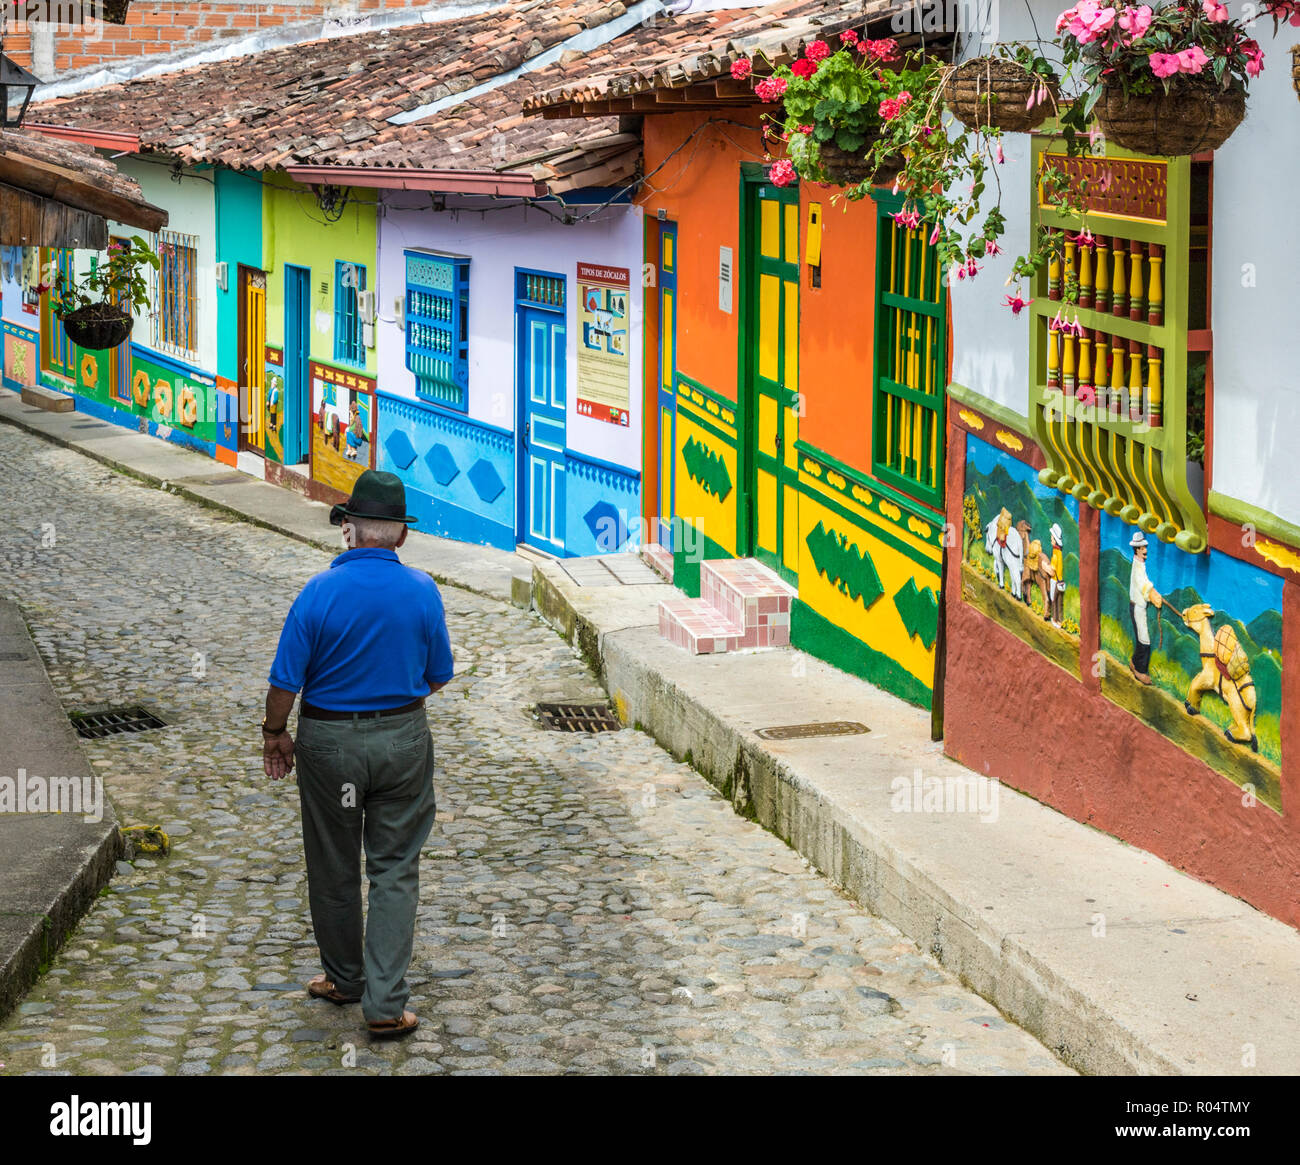 En général, une rue colorée avec des bâtiments couverts en tuiles traditionnelles locales dans la ville pittoresque de Guatape, Colombie, Amérique du Sud Banque D'Images